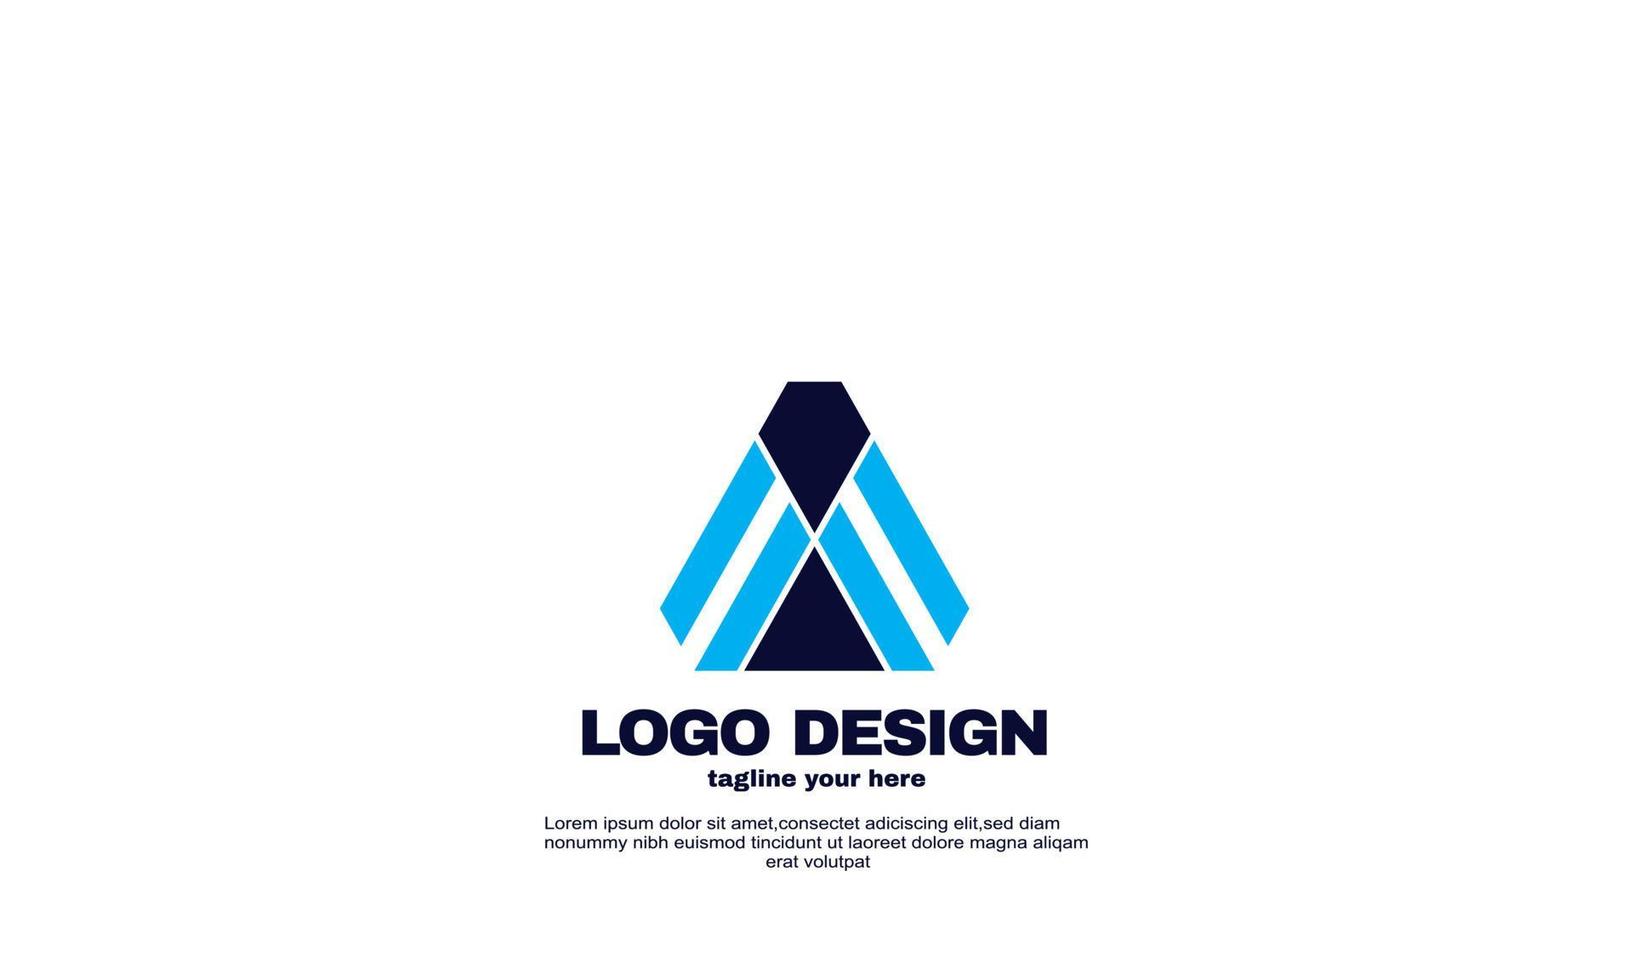 Stock resumen mejor inspiración empresa moderna diseño de logotipo de empresa color azul marino vector